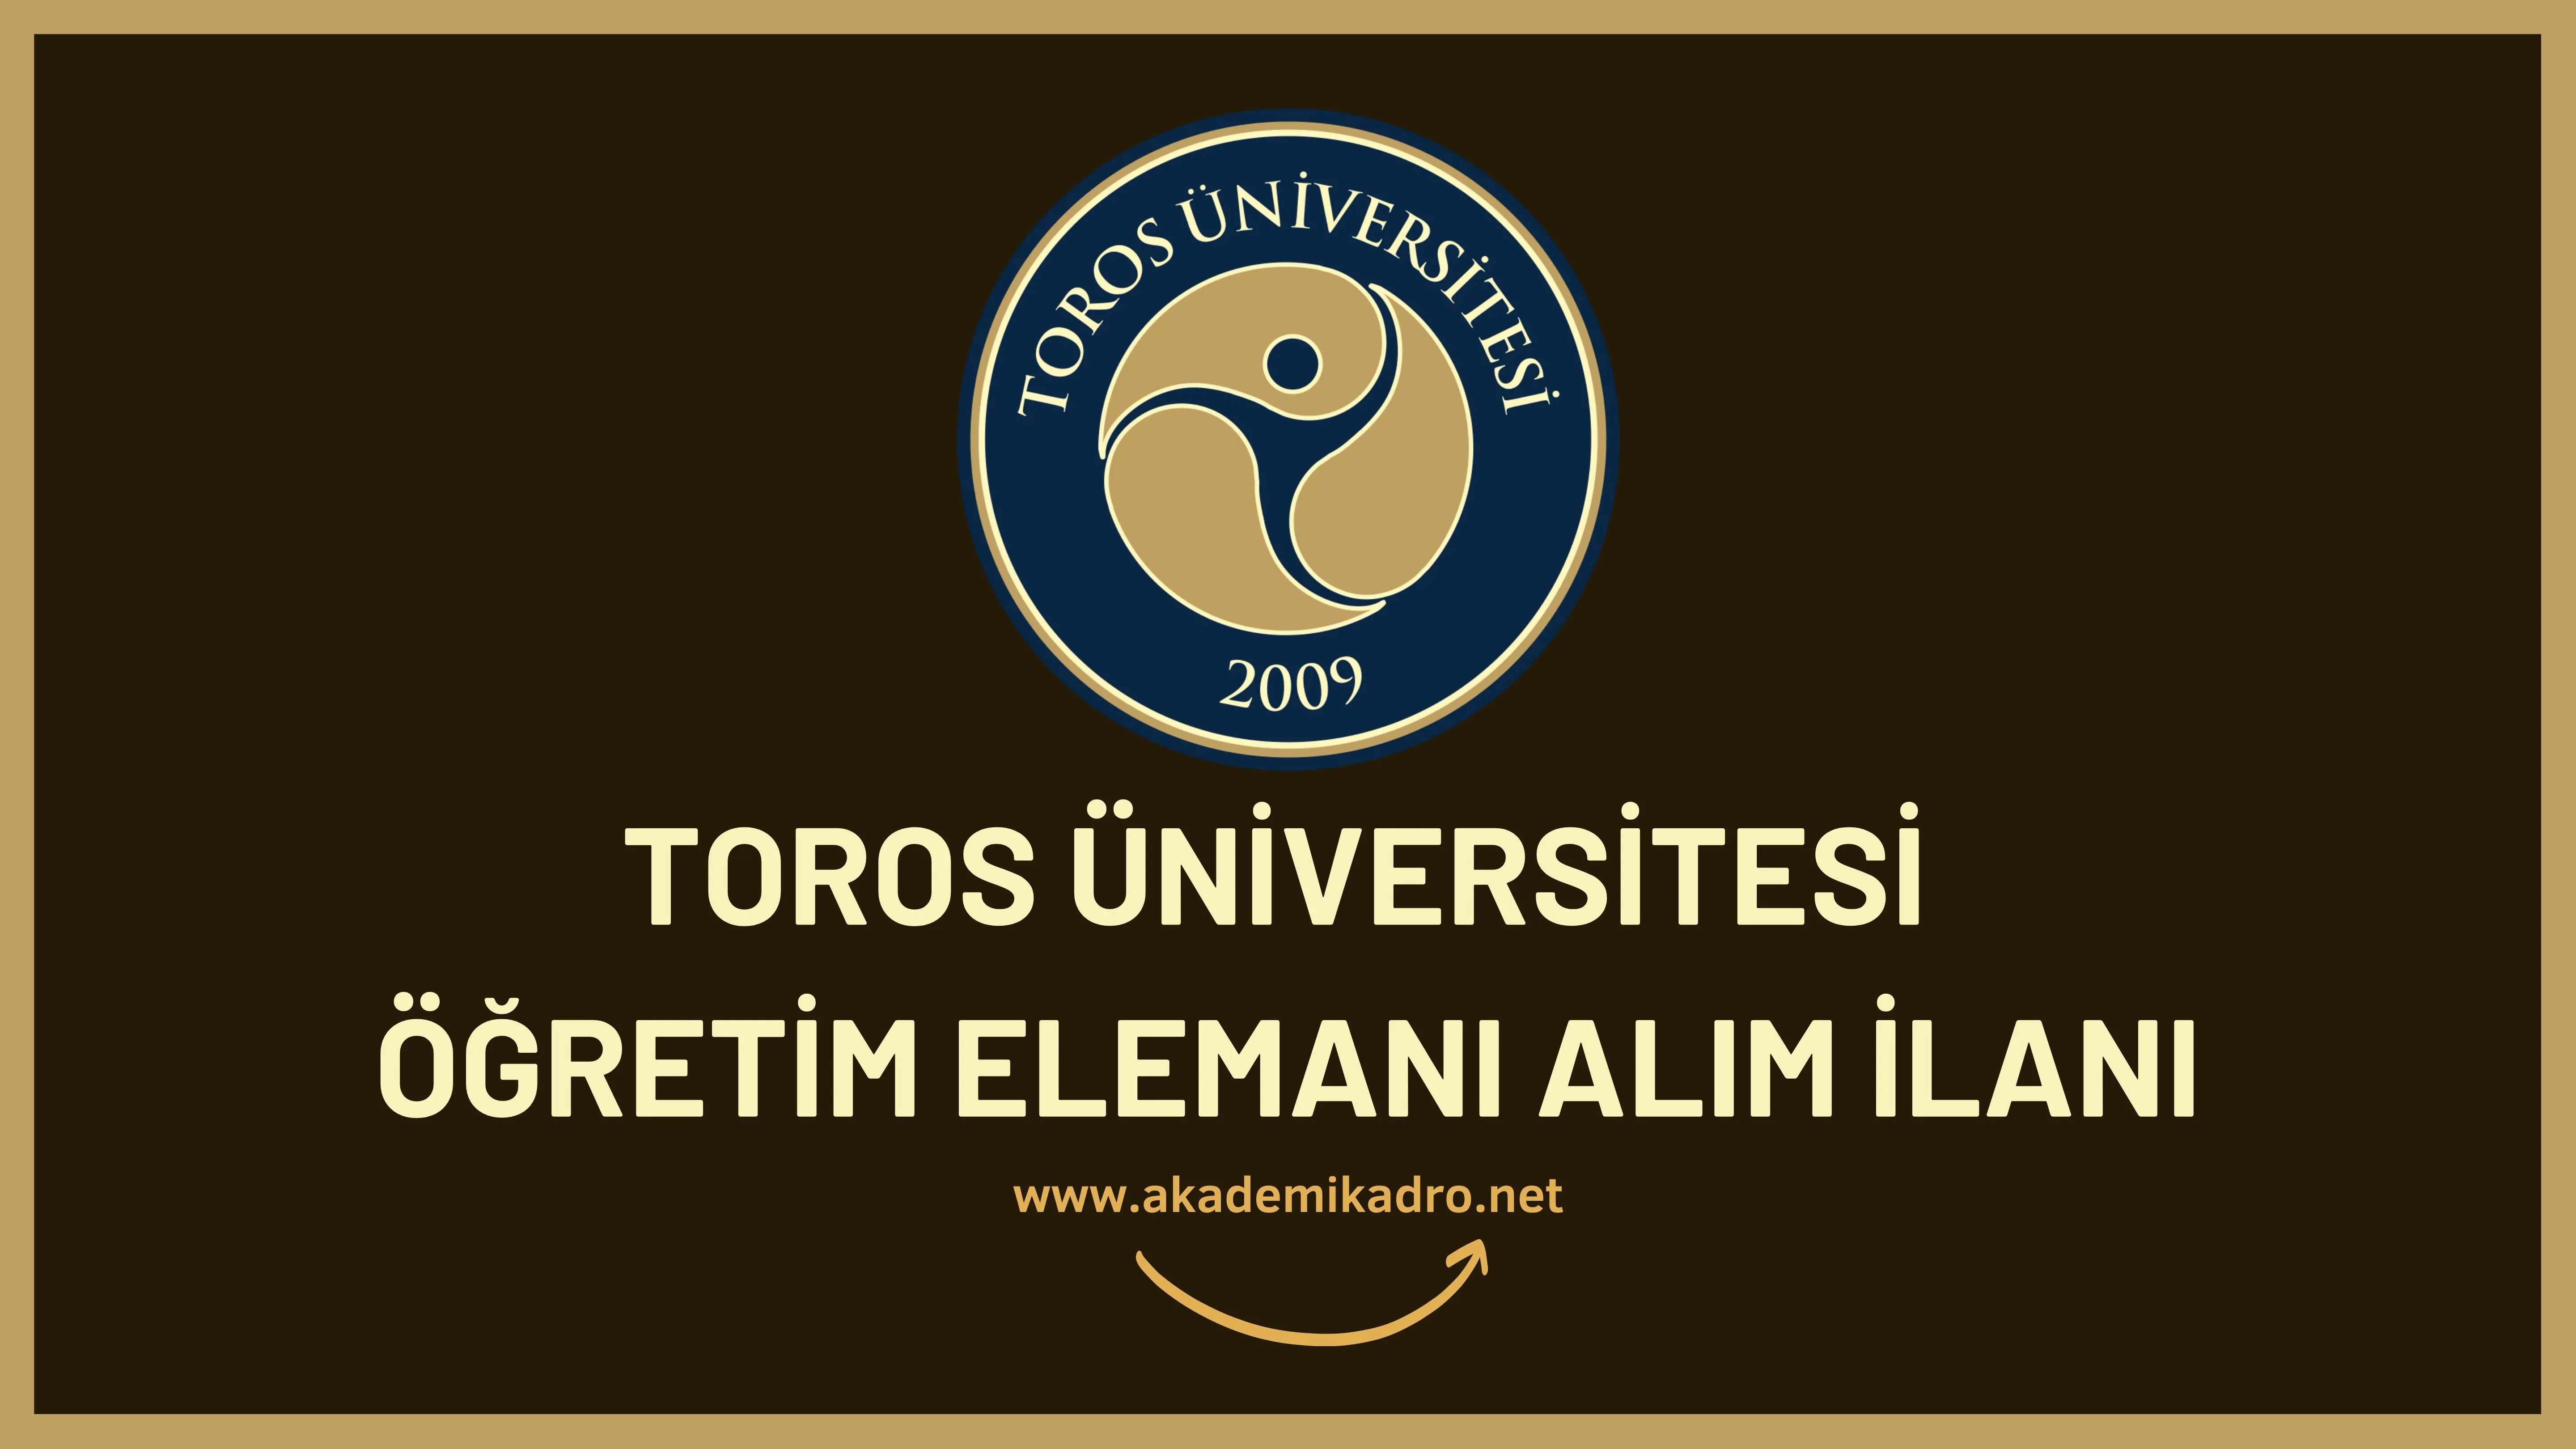 Toros Üniversitesi 3 Araştırma görevlisi ve 12 öğretim üyesi olmak üzere 15 Öğretim elemanı alacak.